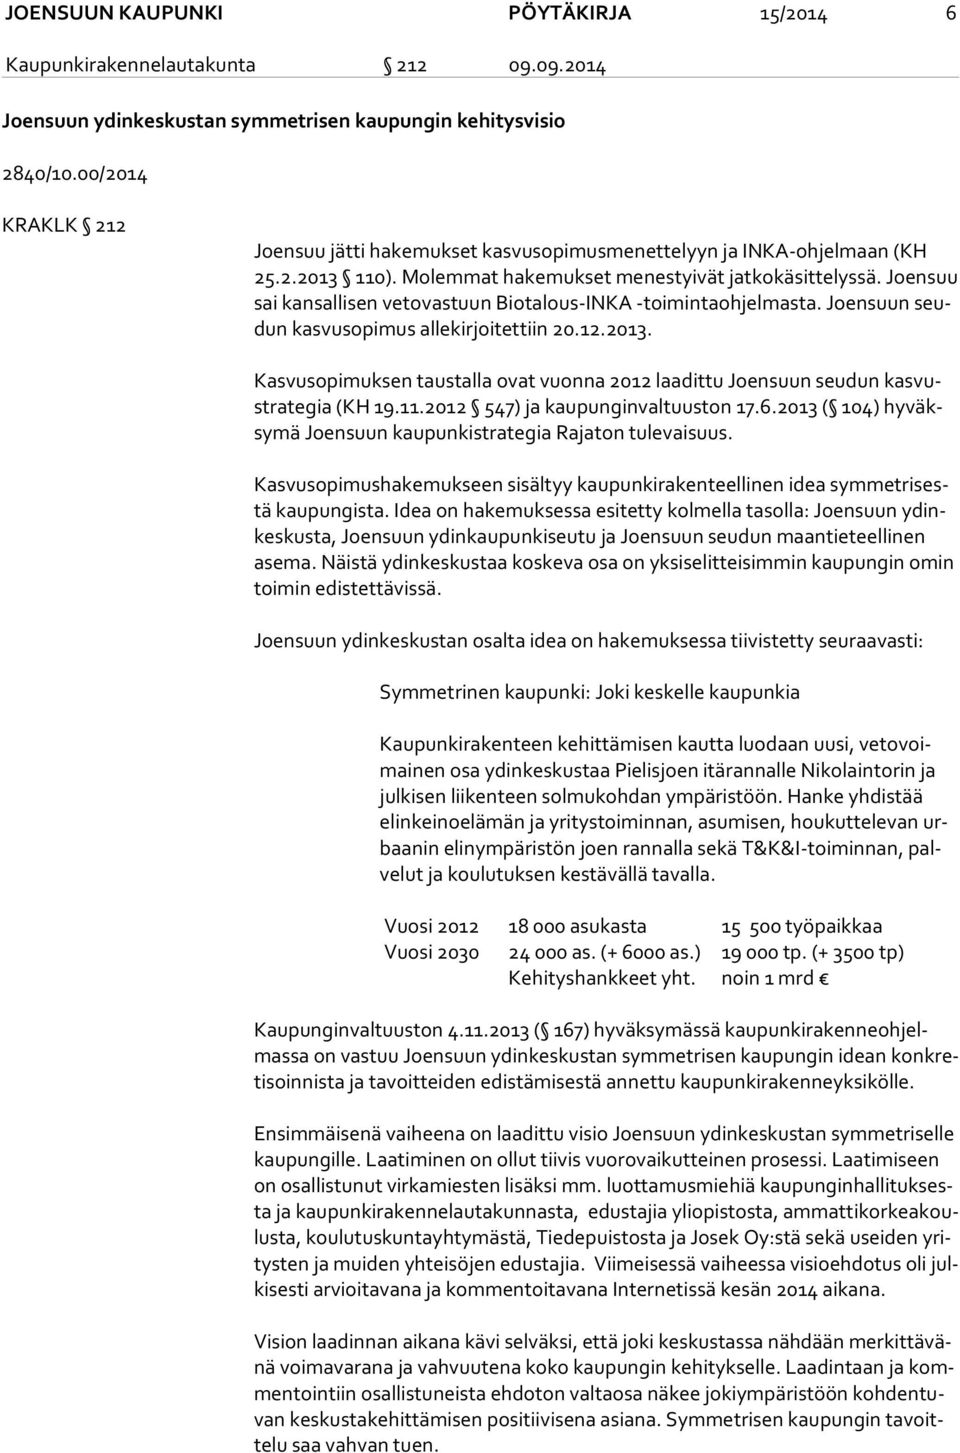 Joensuu sai kansallisen vetovastuun Biotalous-INKA -toimintaohjelmasta. Joensuun seudun kasvusopimus allekirjoitettiin 20.12.2013.